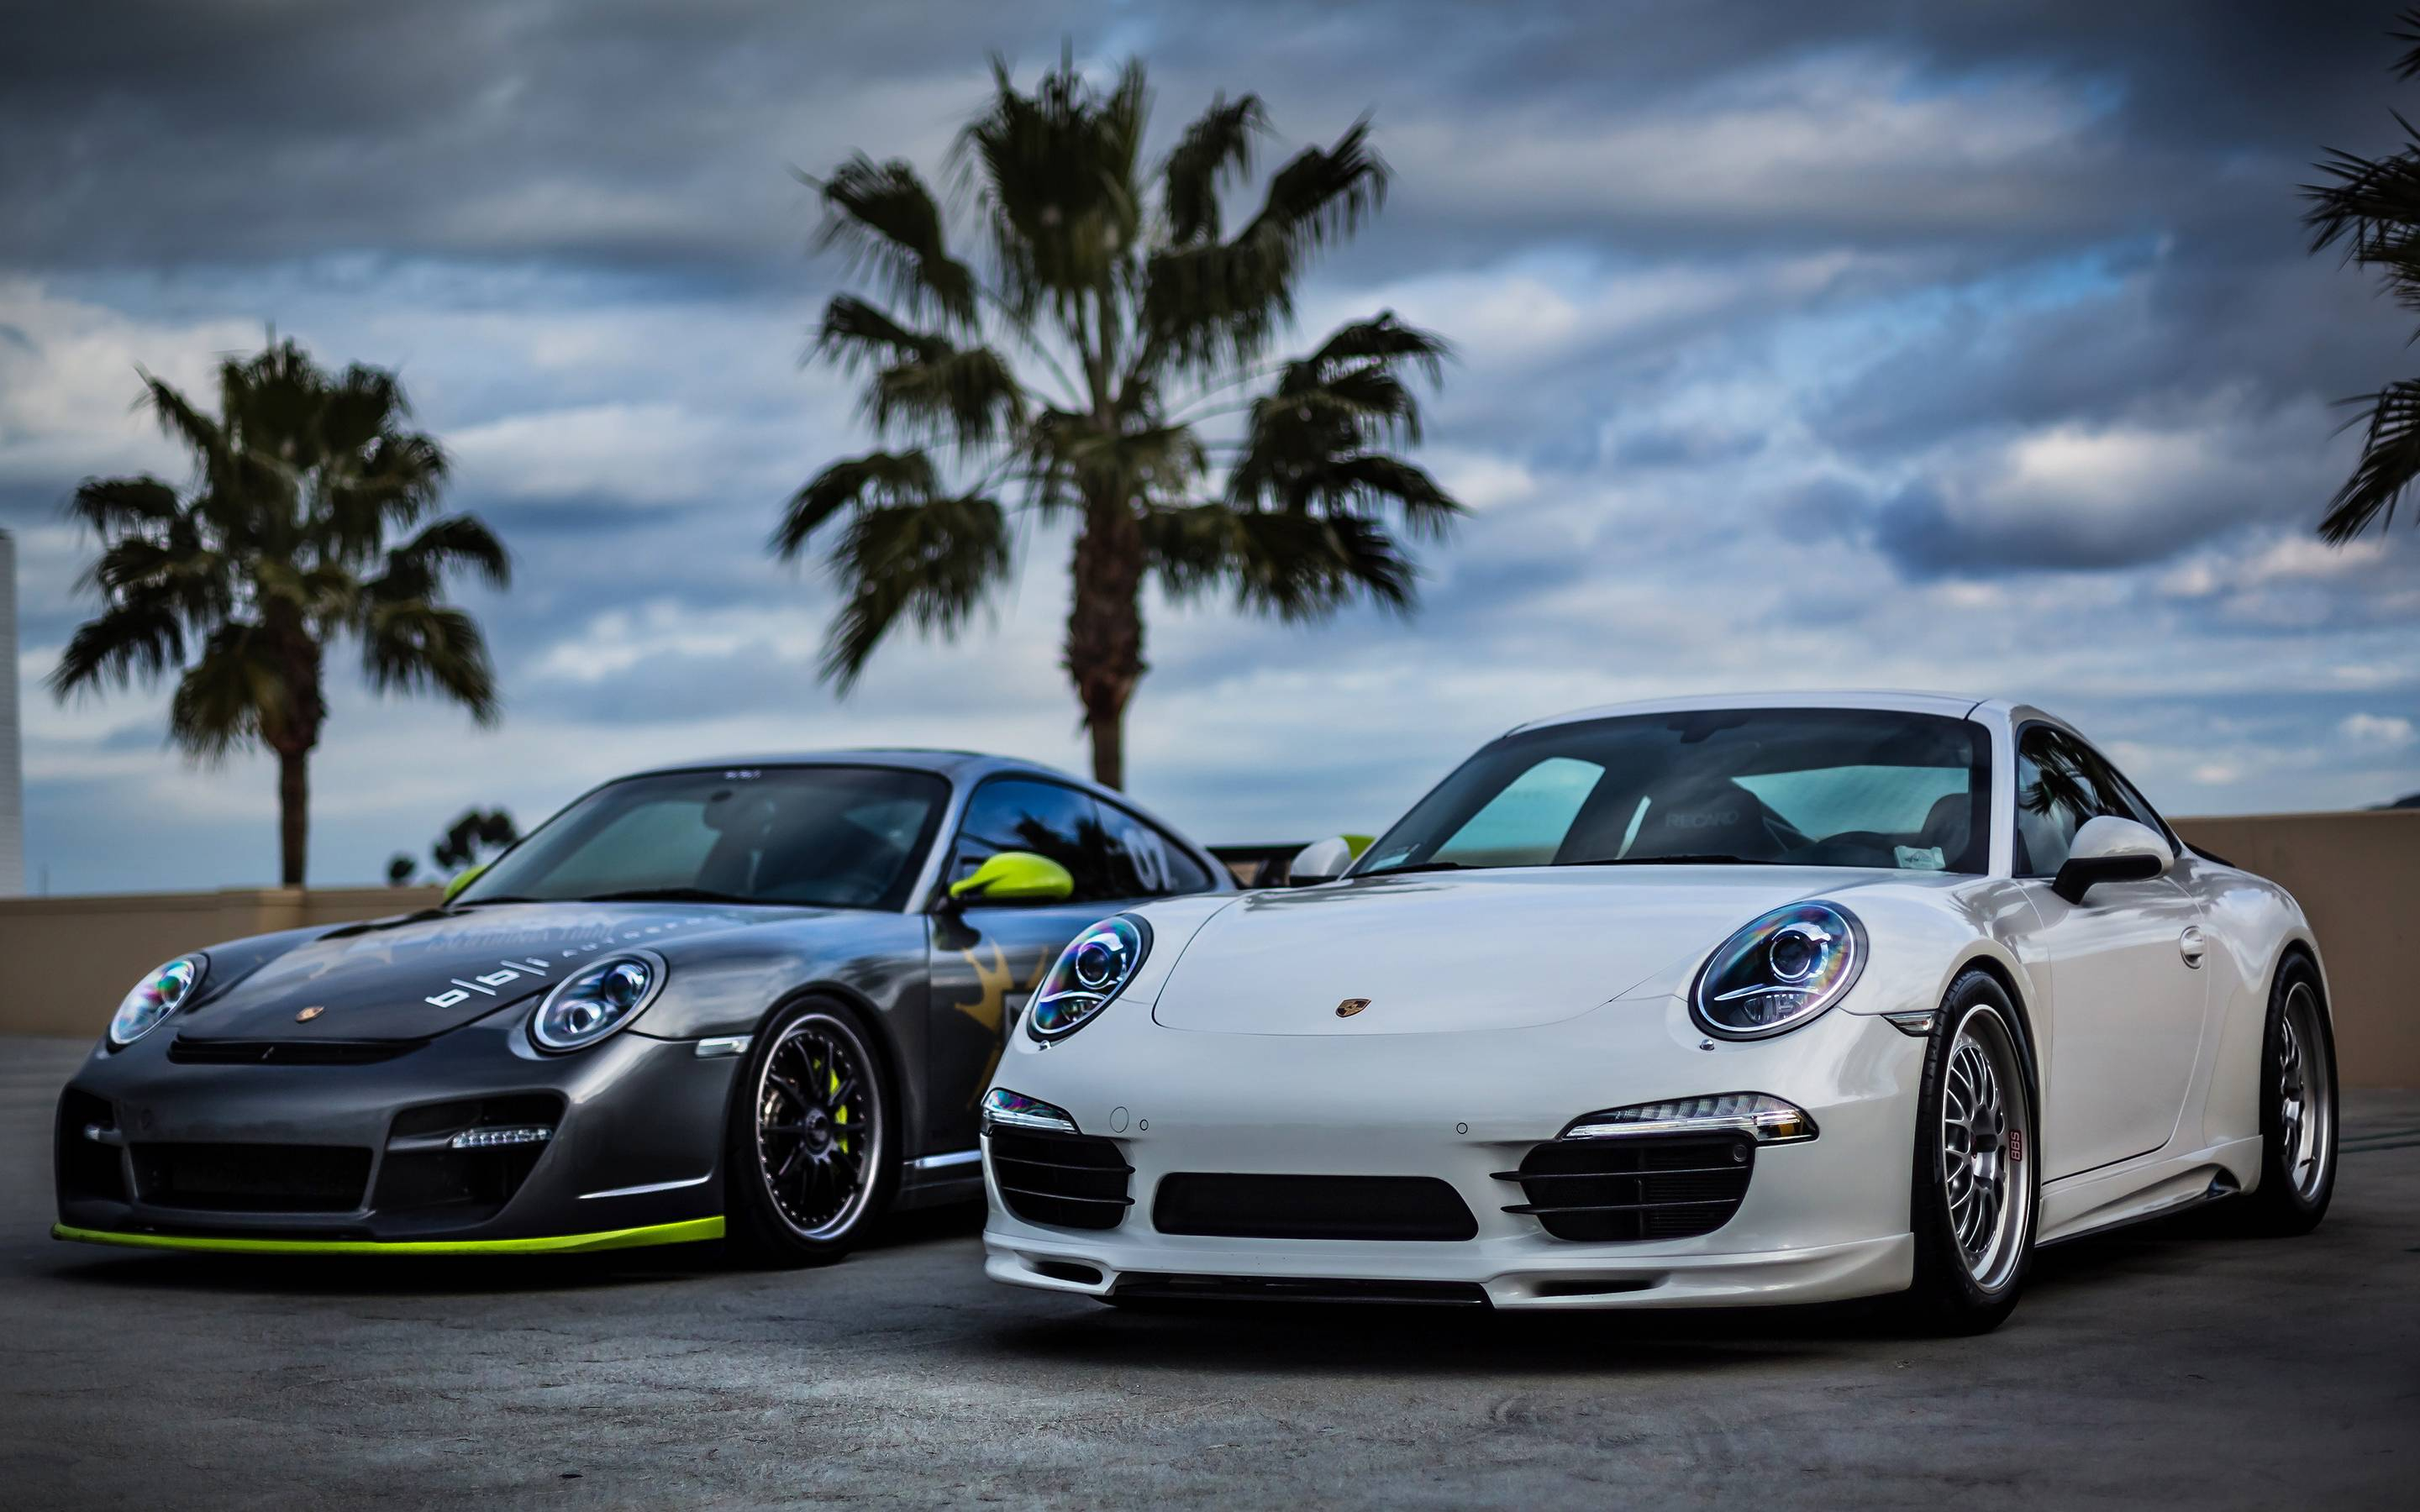 2880x1800 HD Porsche Wallpapers Top Free HD Porsche Backgrounds